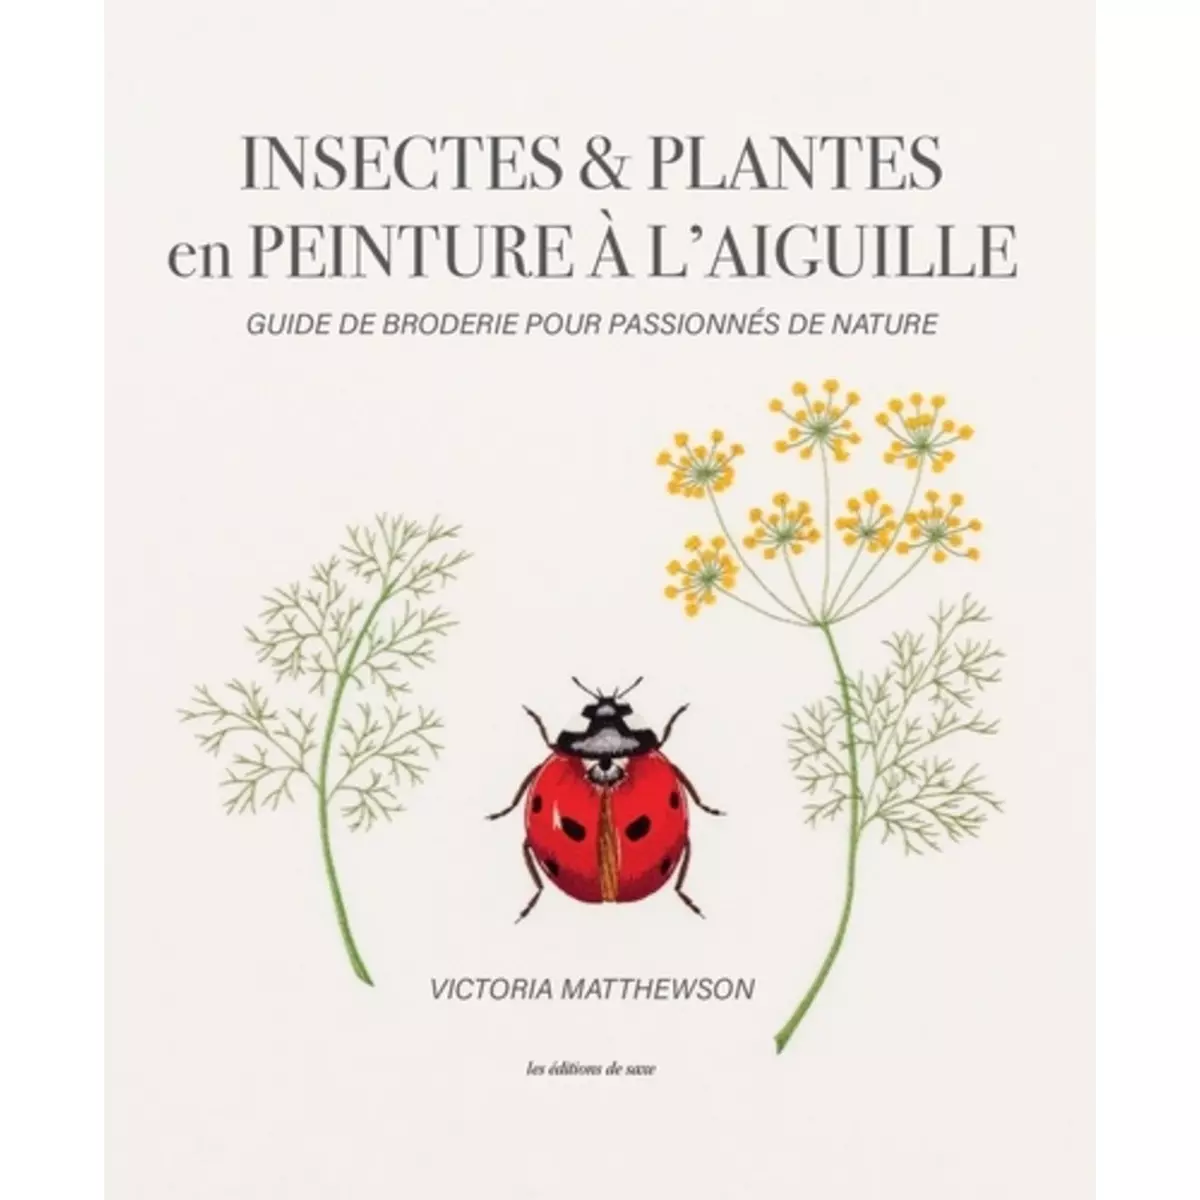  INSECTES & PLANTES EN PEINTURE A L'AIGUILLE. GUIDE DE BRODERIE POUR PASSIONNES DE NATURE, Matthewson Victoria